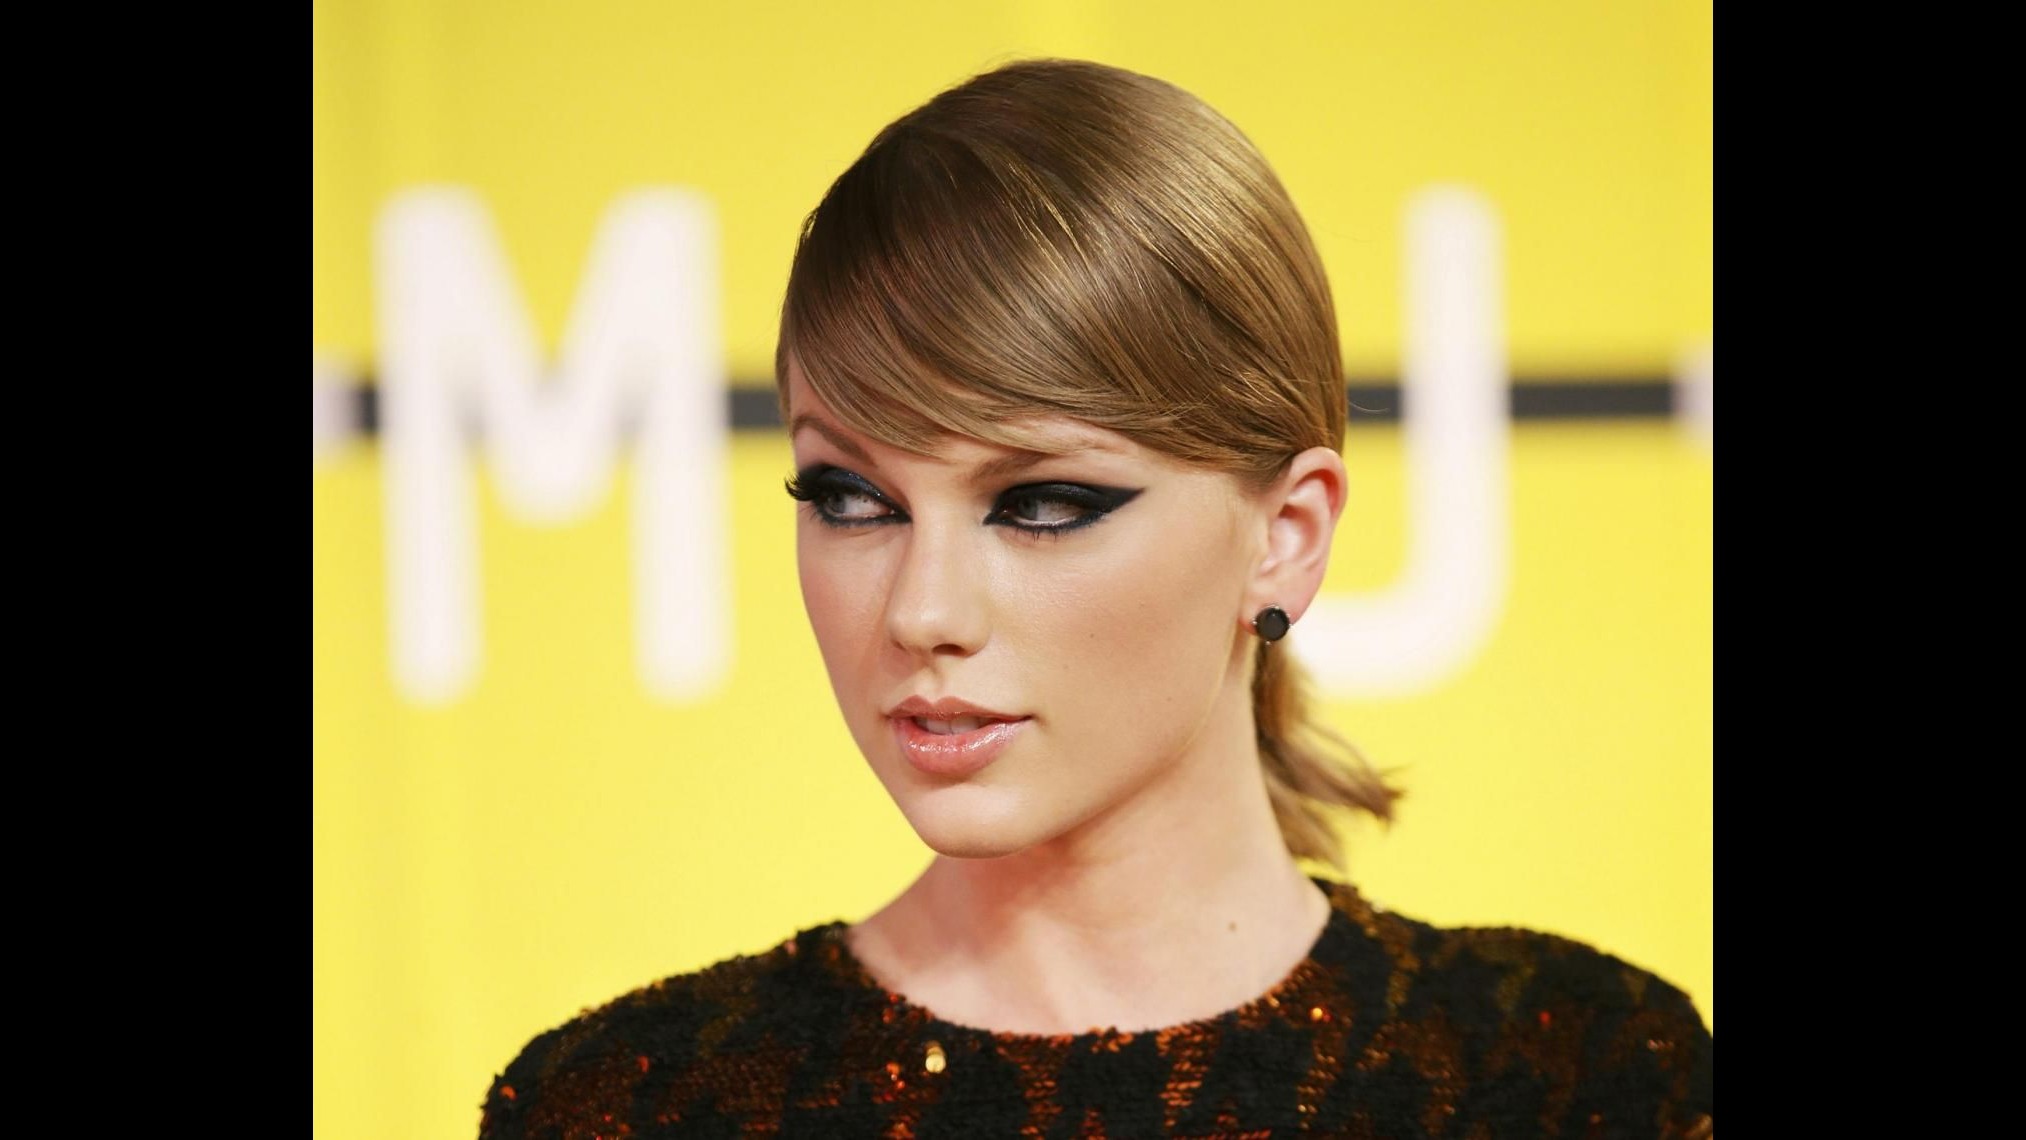 Paura per Taylor Swift: suona allarme antincendio, lei in accappatoio